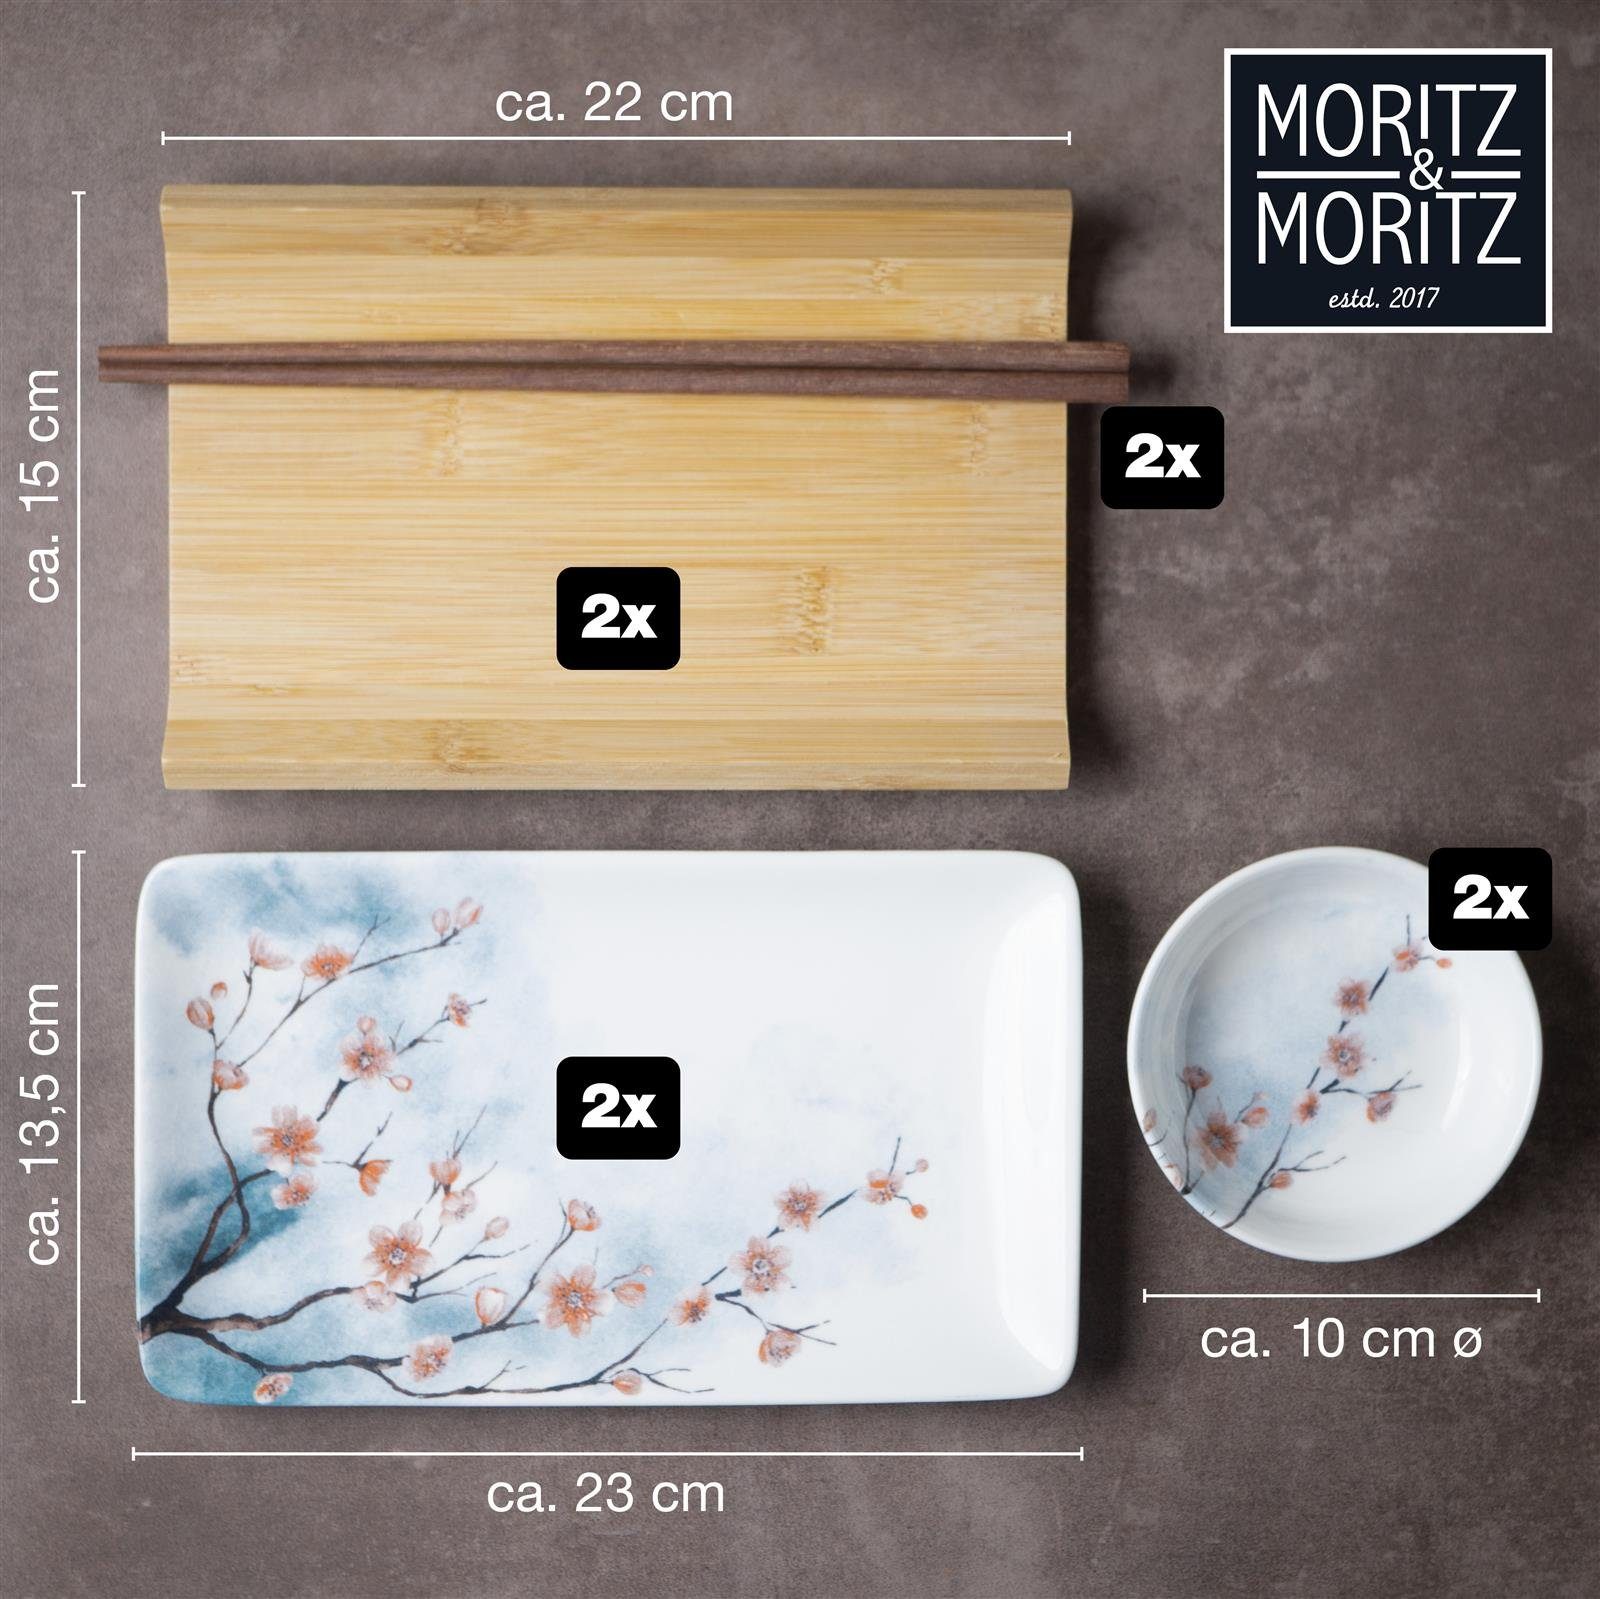 Moritz & Moritz Geschirrset für Personen Moritz Tafelservice 10 & Gourmet Sushi Moritz teilig (8-tlg), Personen, - 2 Set 2 Kirschblüten